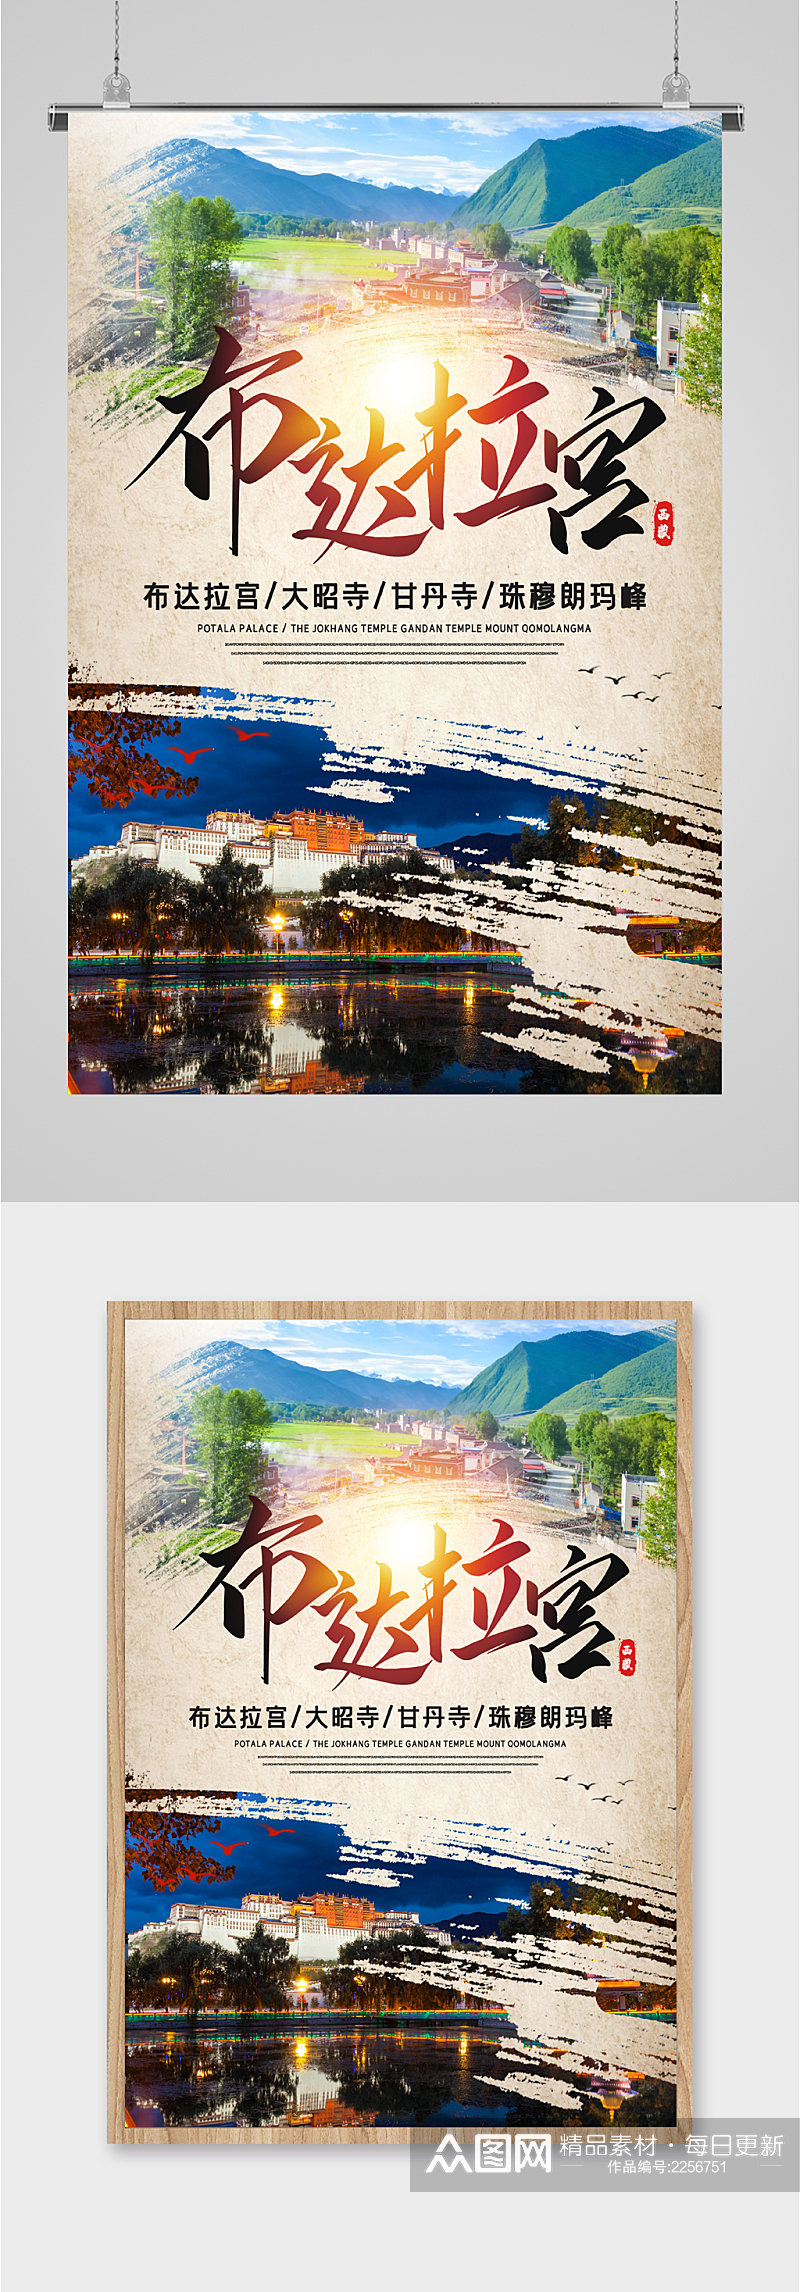 西藏布达拉宫景点海报素材